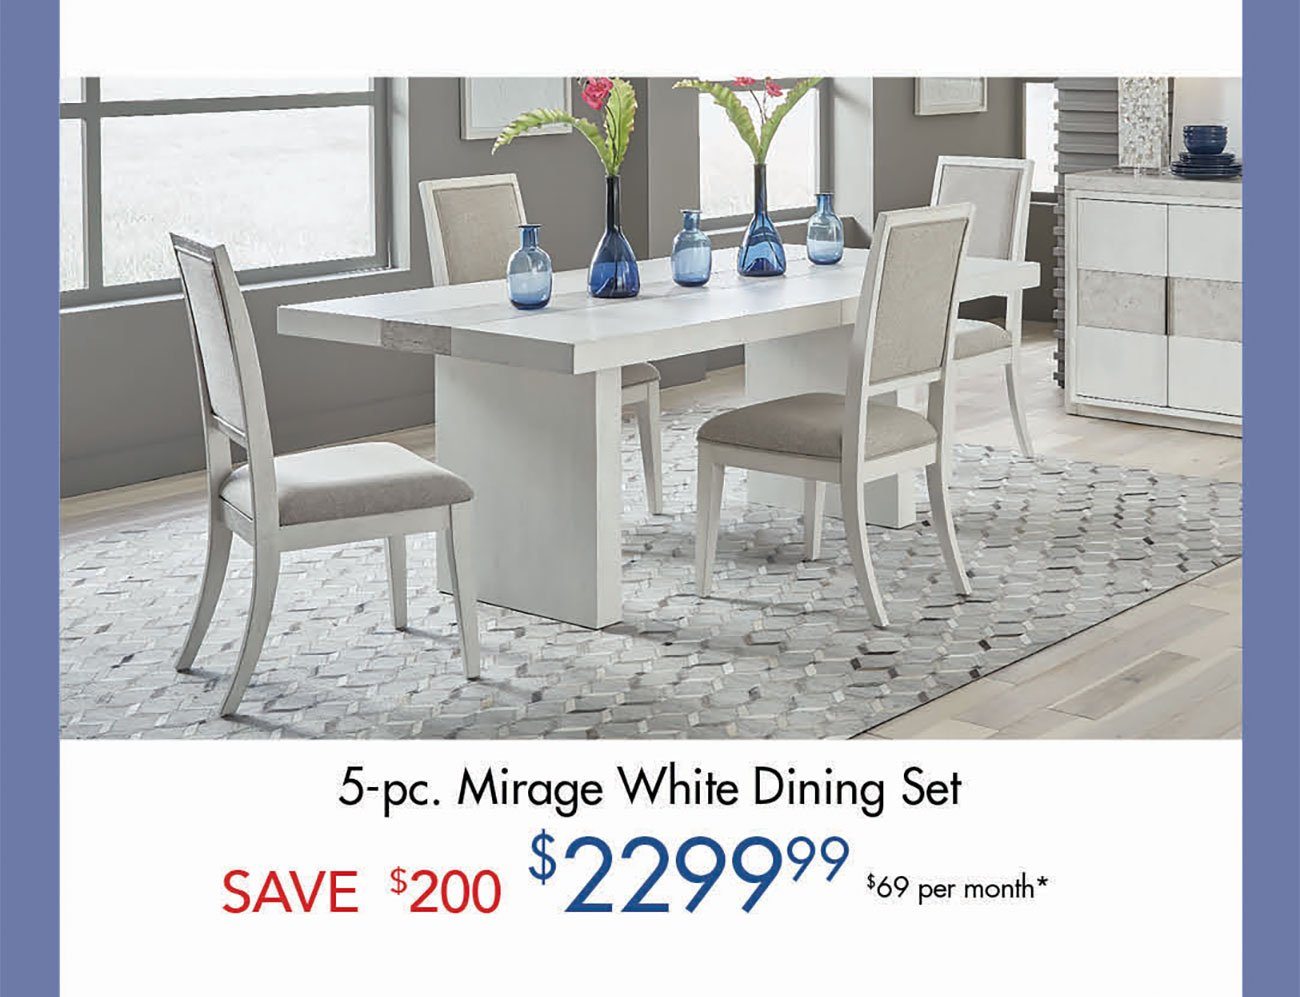 Mirage-White-Dining-Set